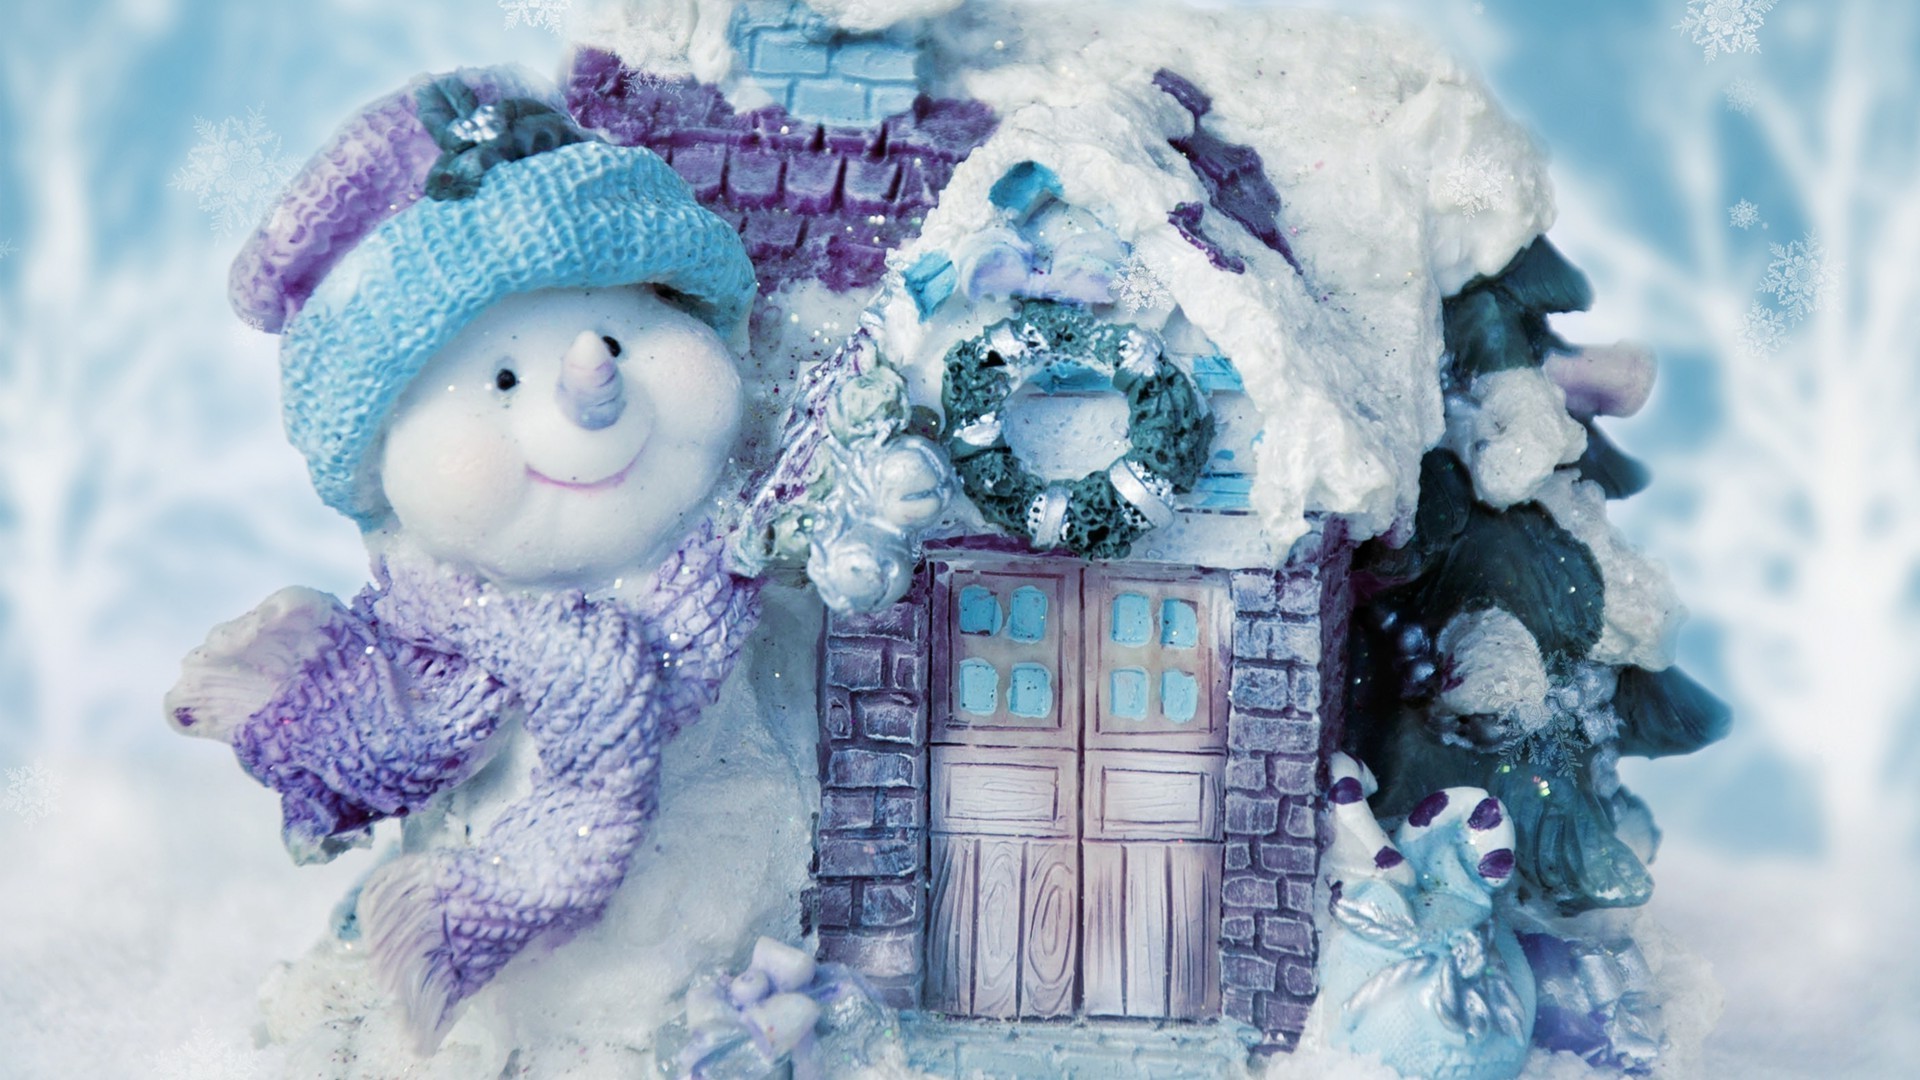 новый год зима снег холодная мороз рождество лед замороженные сезон снежинка ребенок украшения удовольствие искусство шарф красивые подарок снеговик